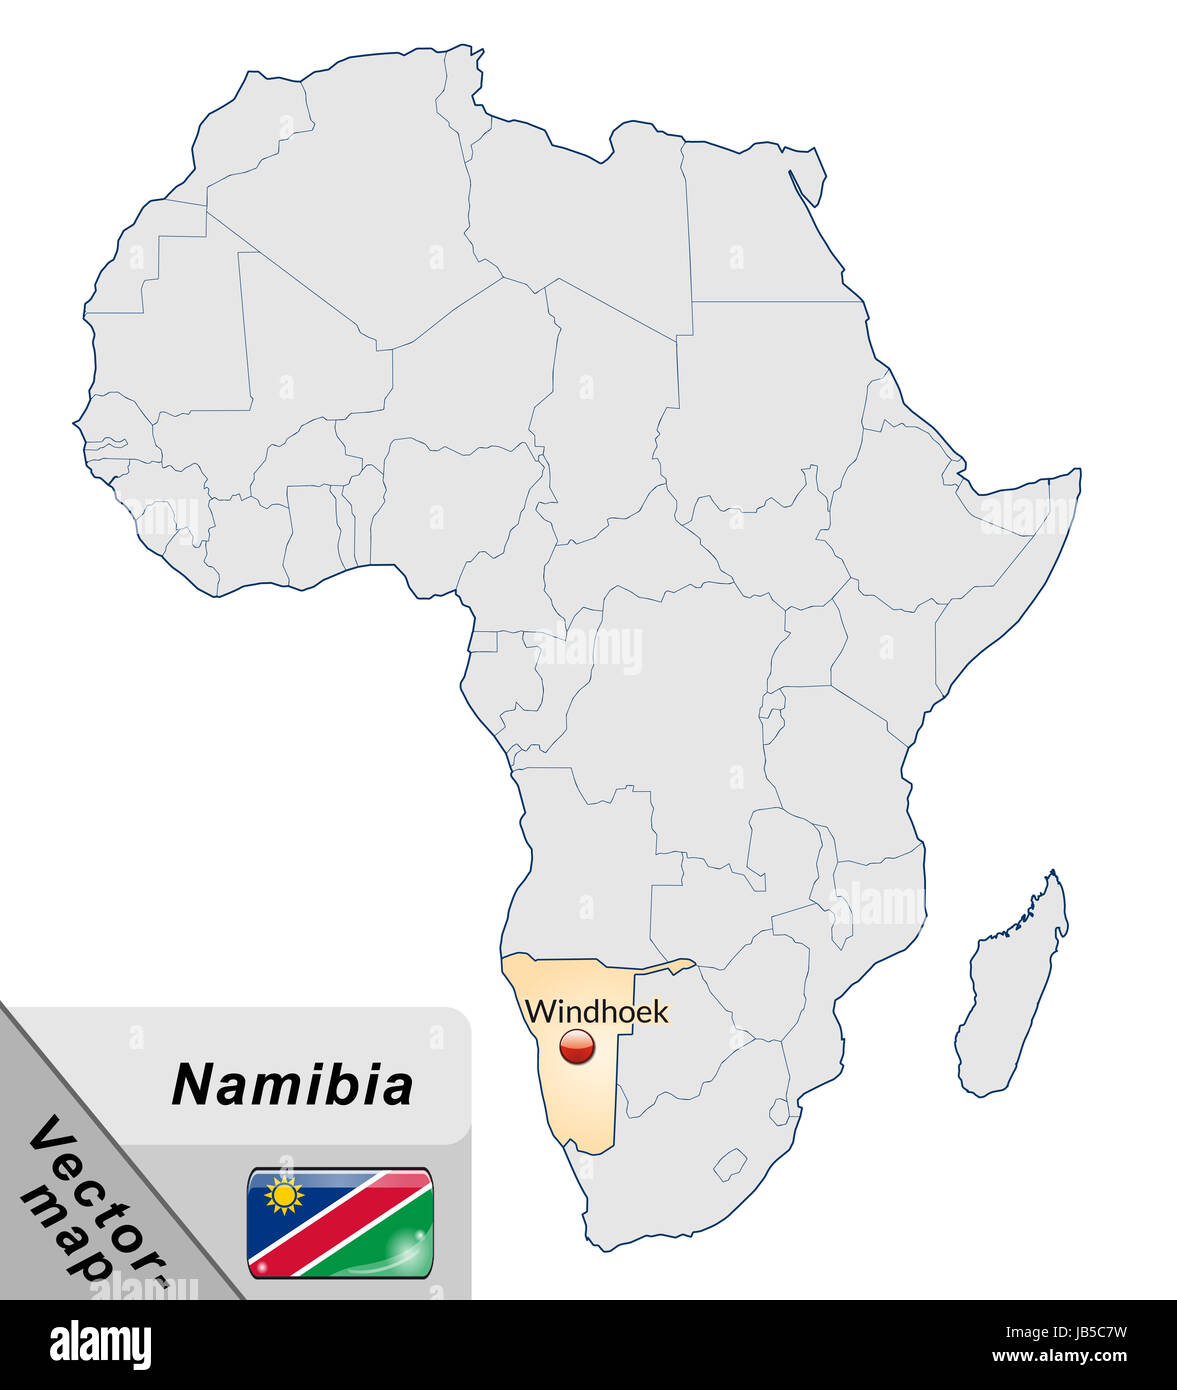 Namibia in  Afrika als Inselkarte  in Pastellorange. Durch die ansprechende Gestaltung fügt sich die Karte perfekt in Ihr Vorhaben ein. Stock Photo